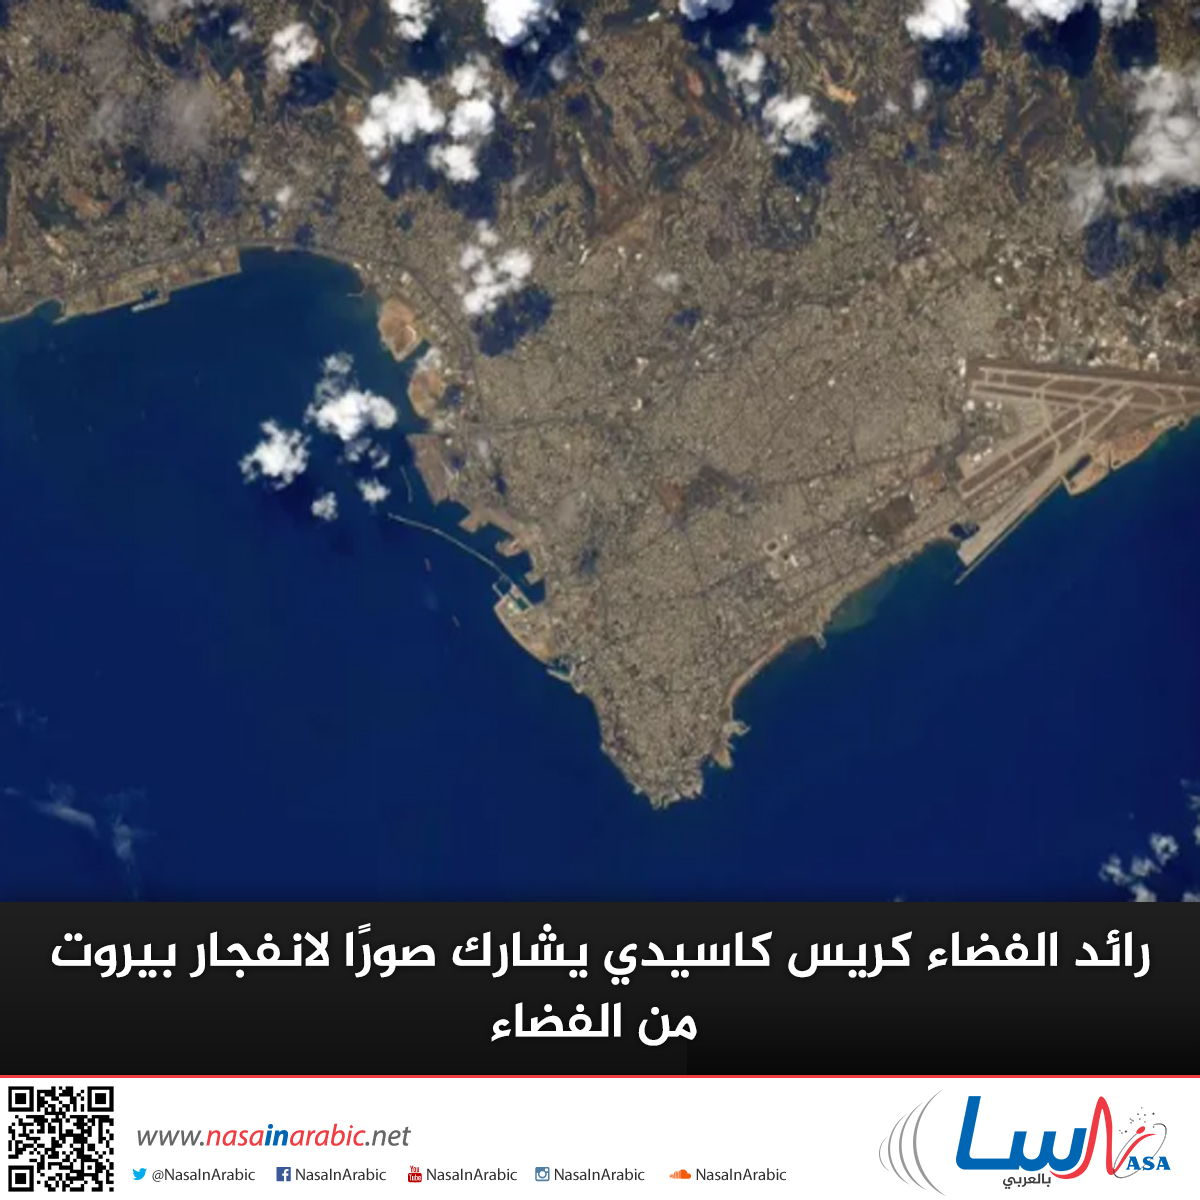 رائد الفضاء كريس كاسيدي يشارك صورًا لانفجار بيروت من الفضاء